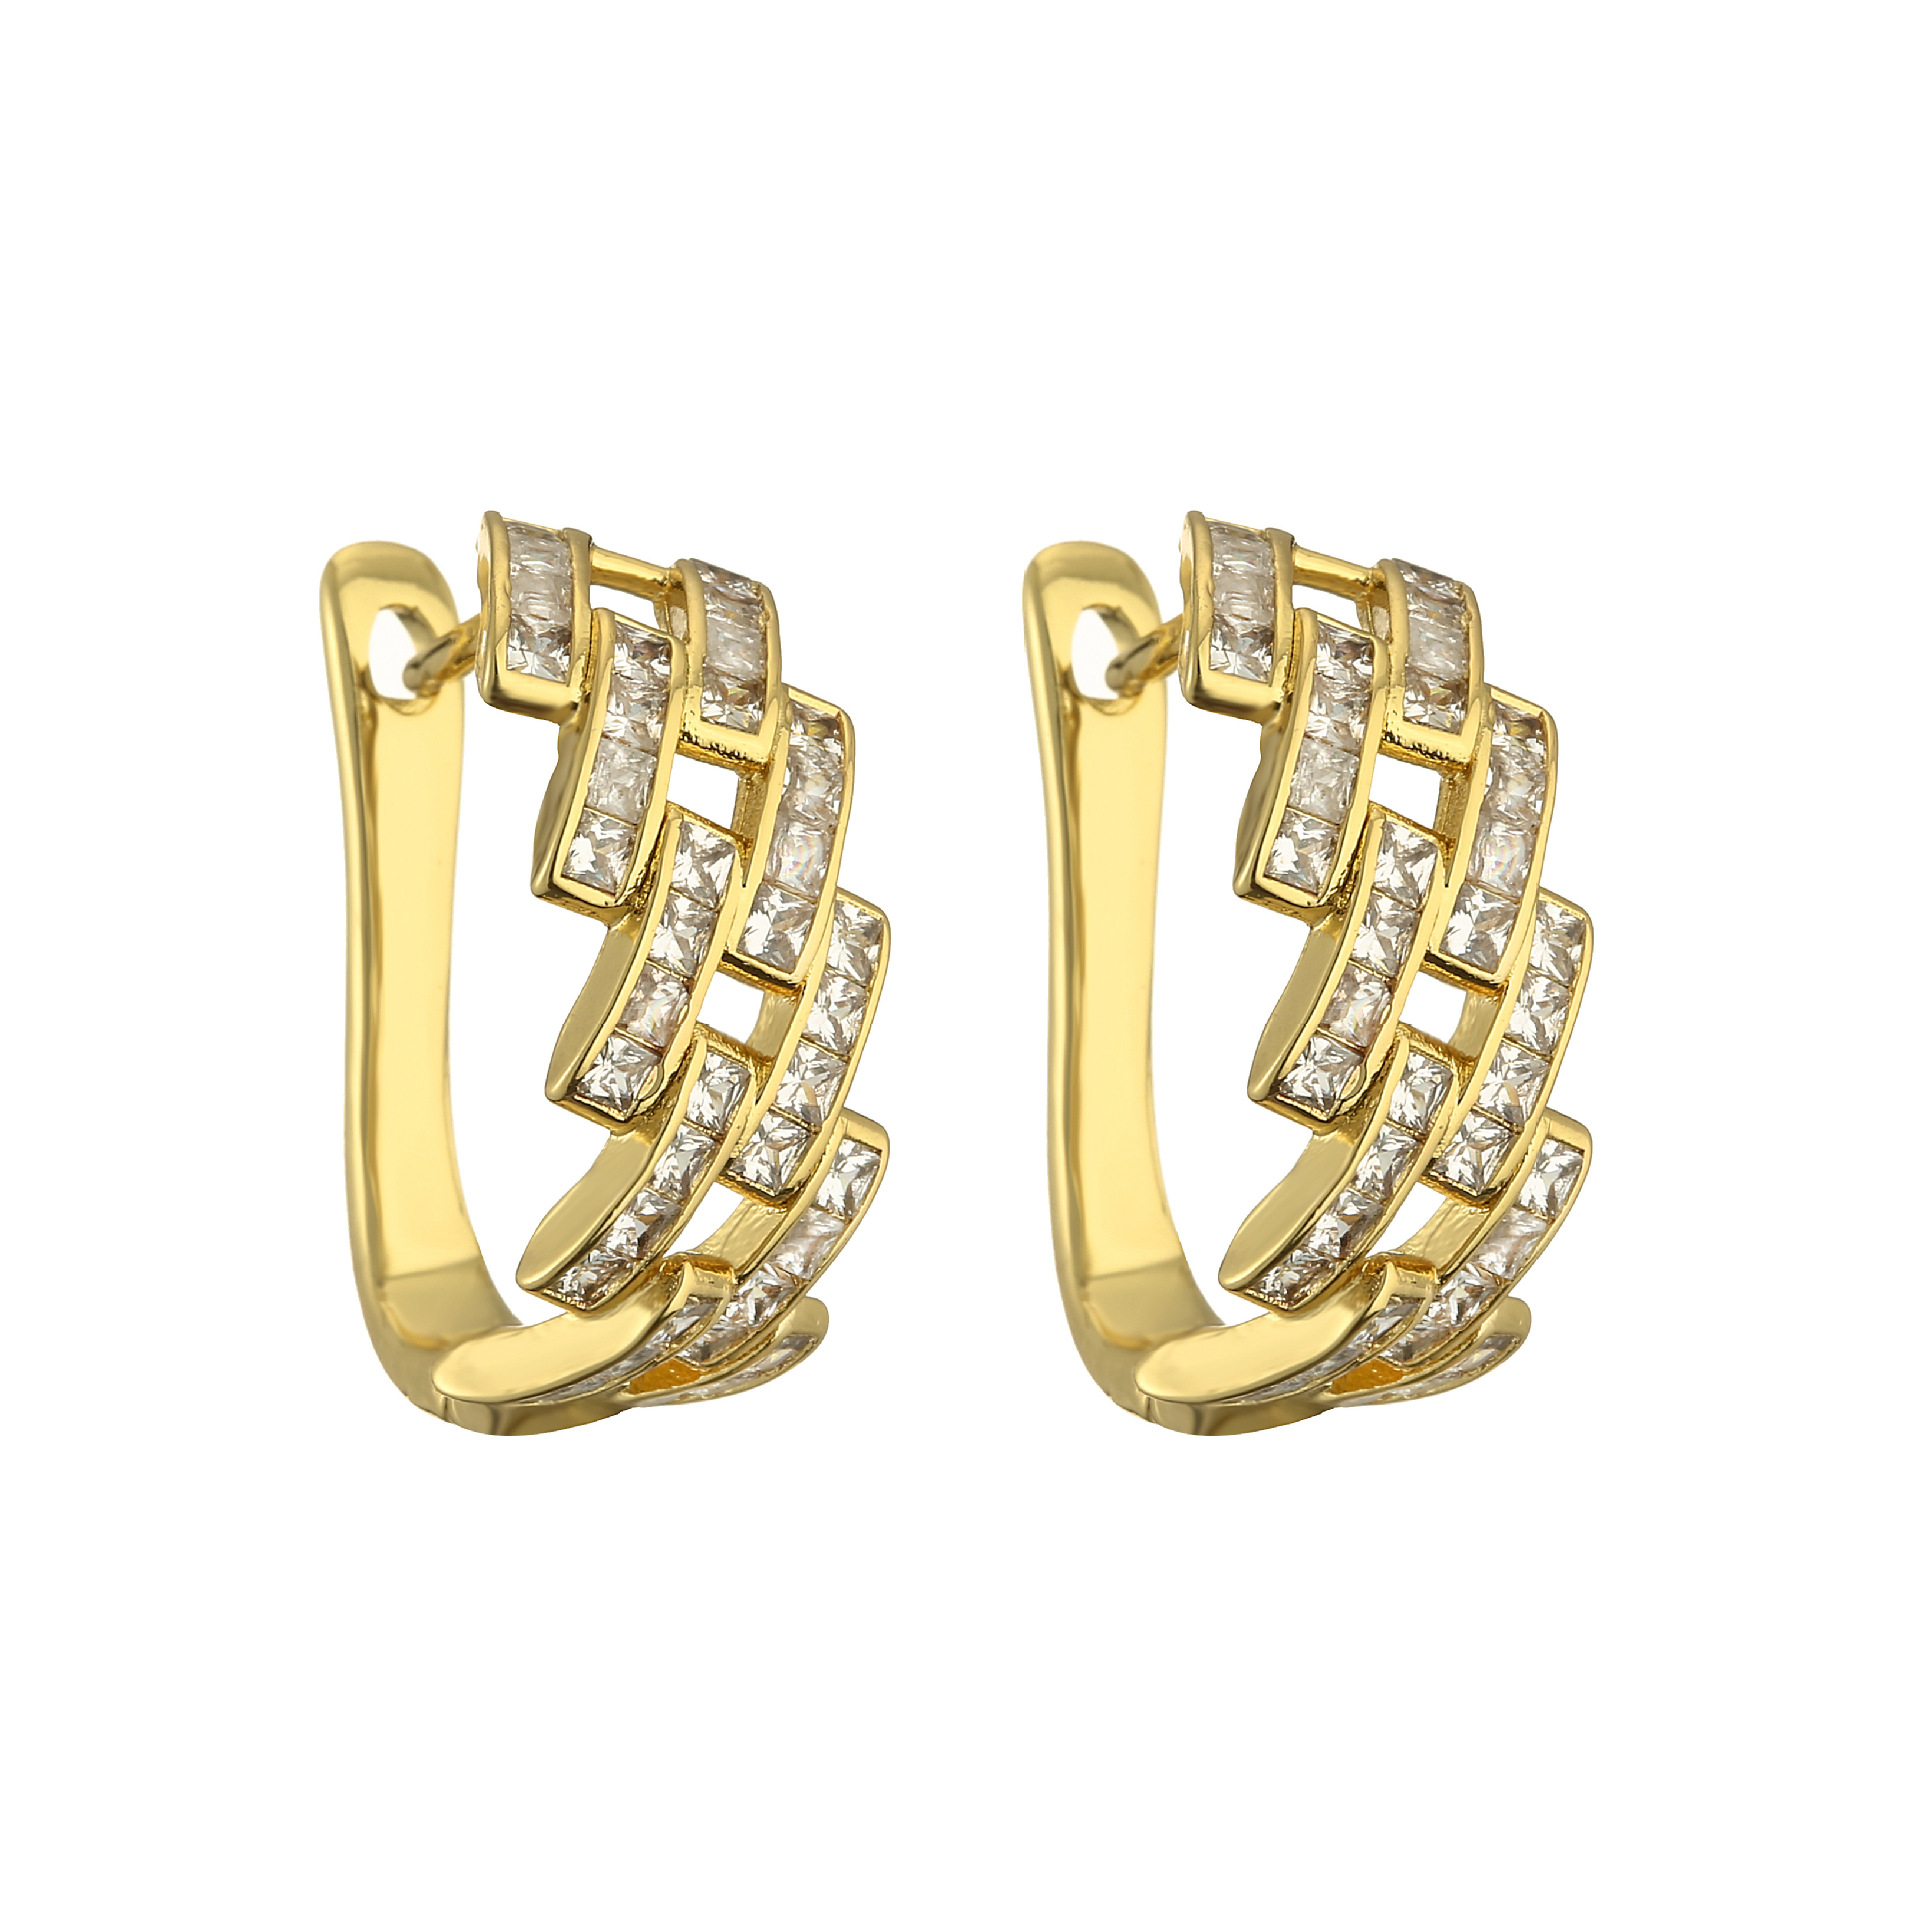 1 pair of golden earrings